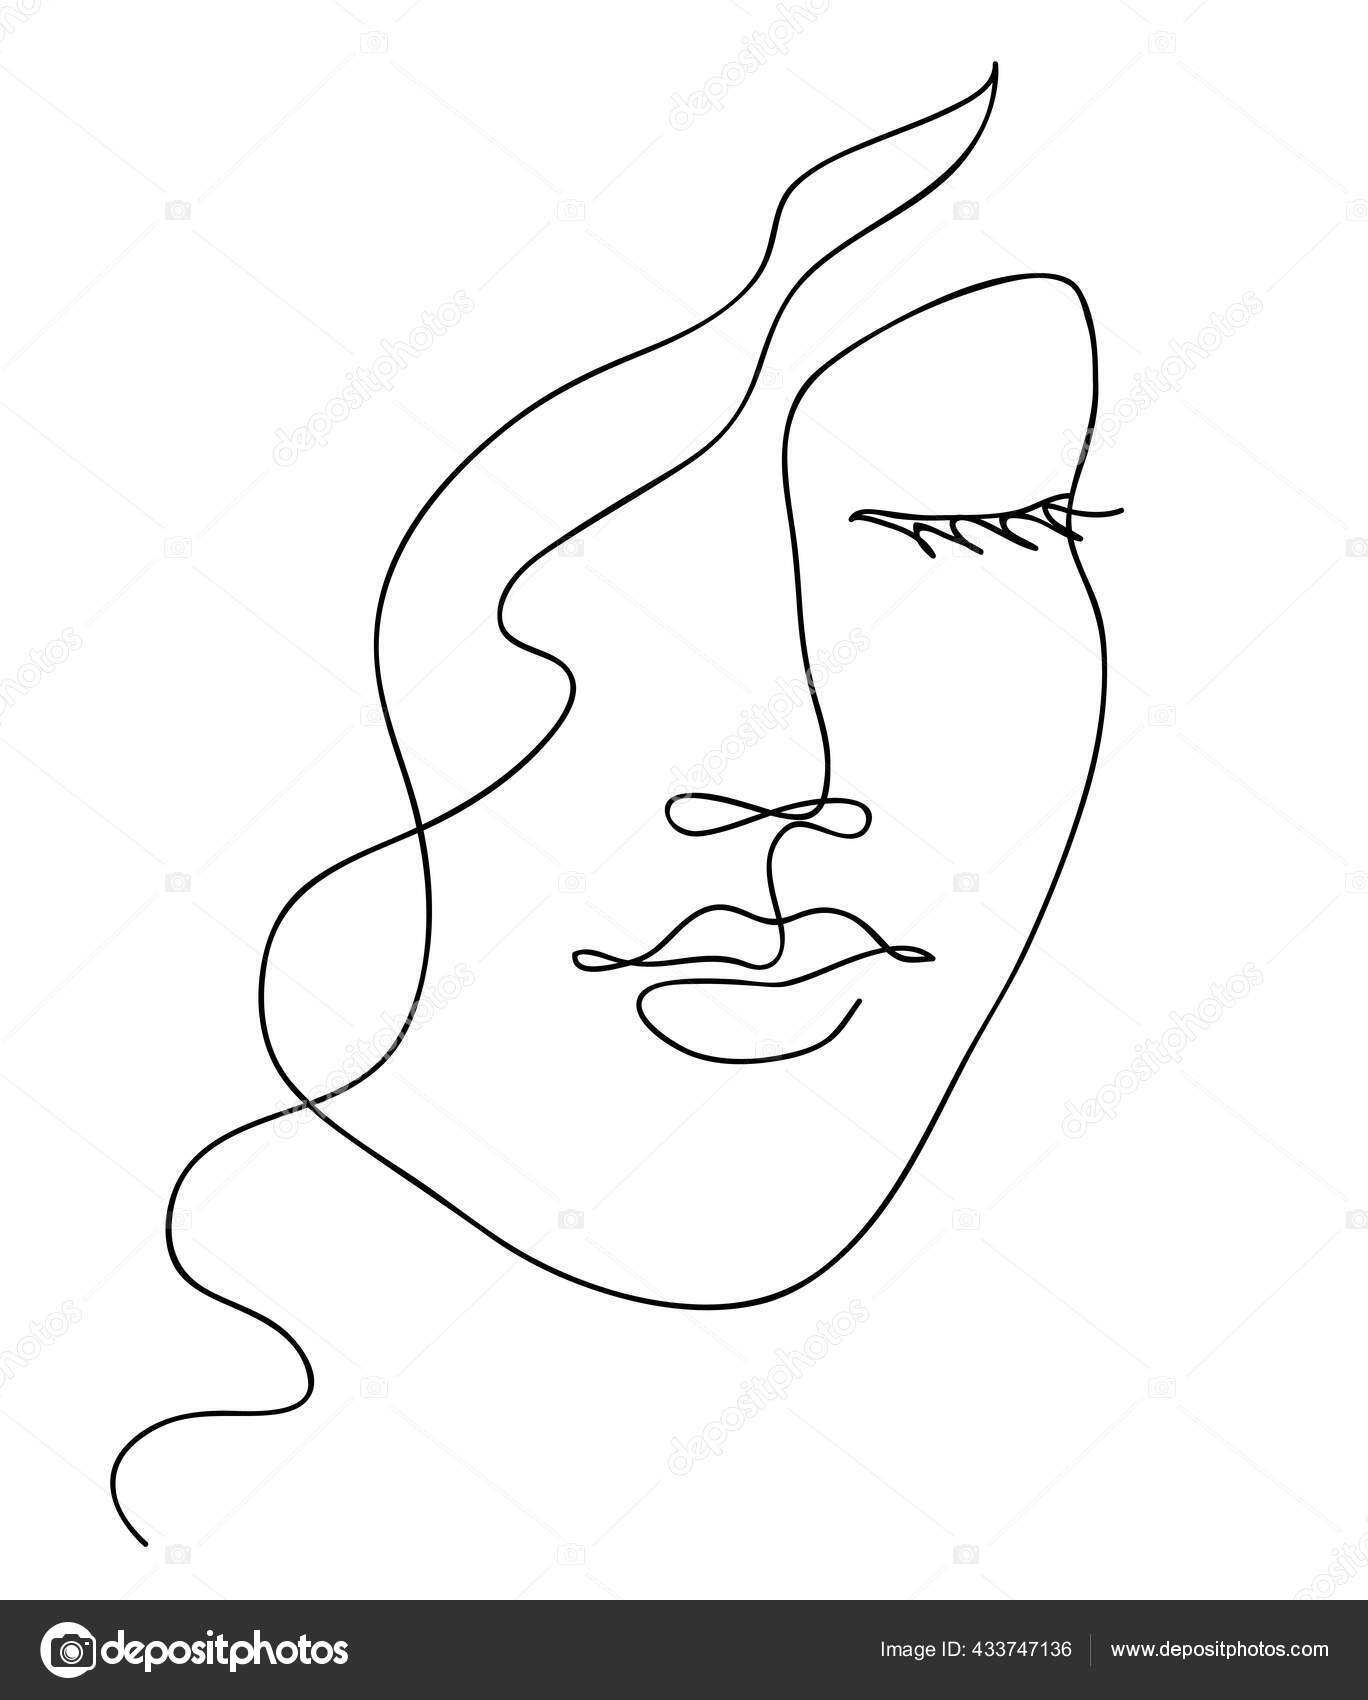 Face outline. Контур лица девушки рисунок одной линией. Силуэт женщины контур. Лицо девушки арт тонкие линии. Абстрактный женский портрет.